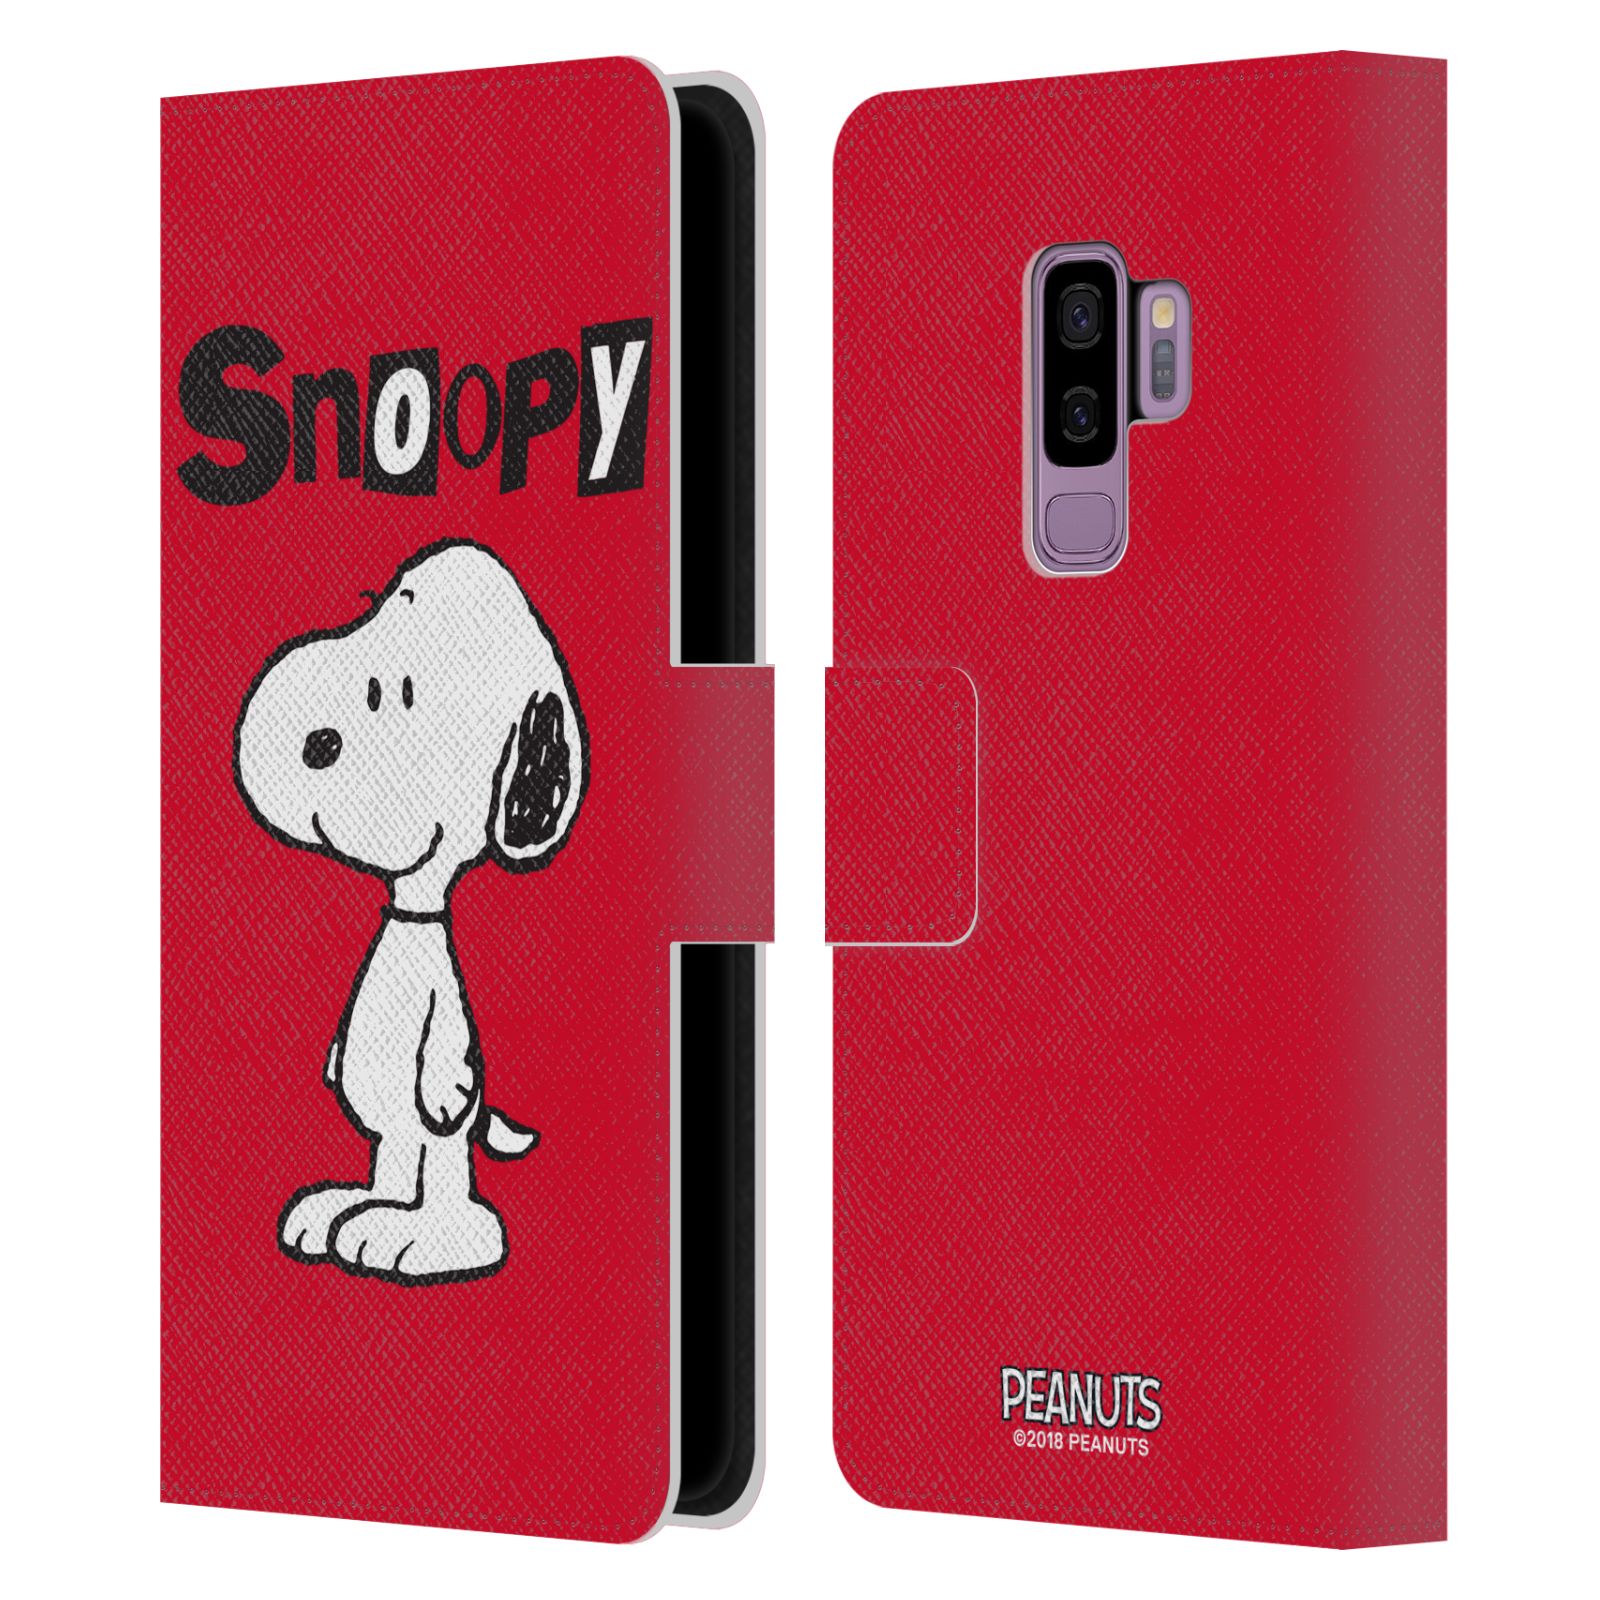 Pouzdro na mobil Samsung Galaxy S9+ / S9 PLUS - HEAD CASE - Peanuts - Snoopy červená